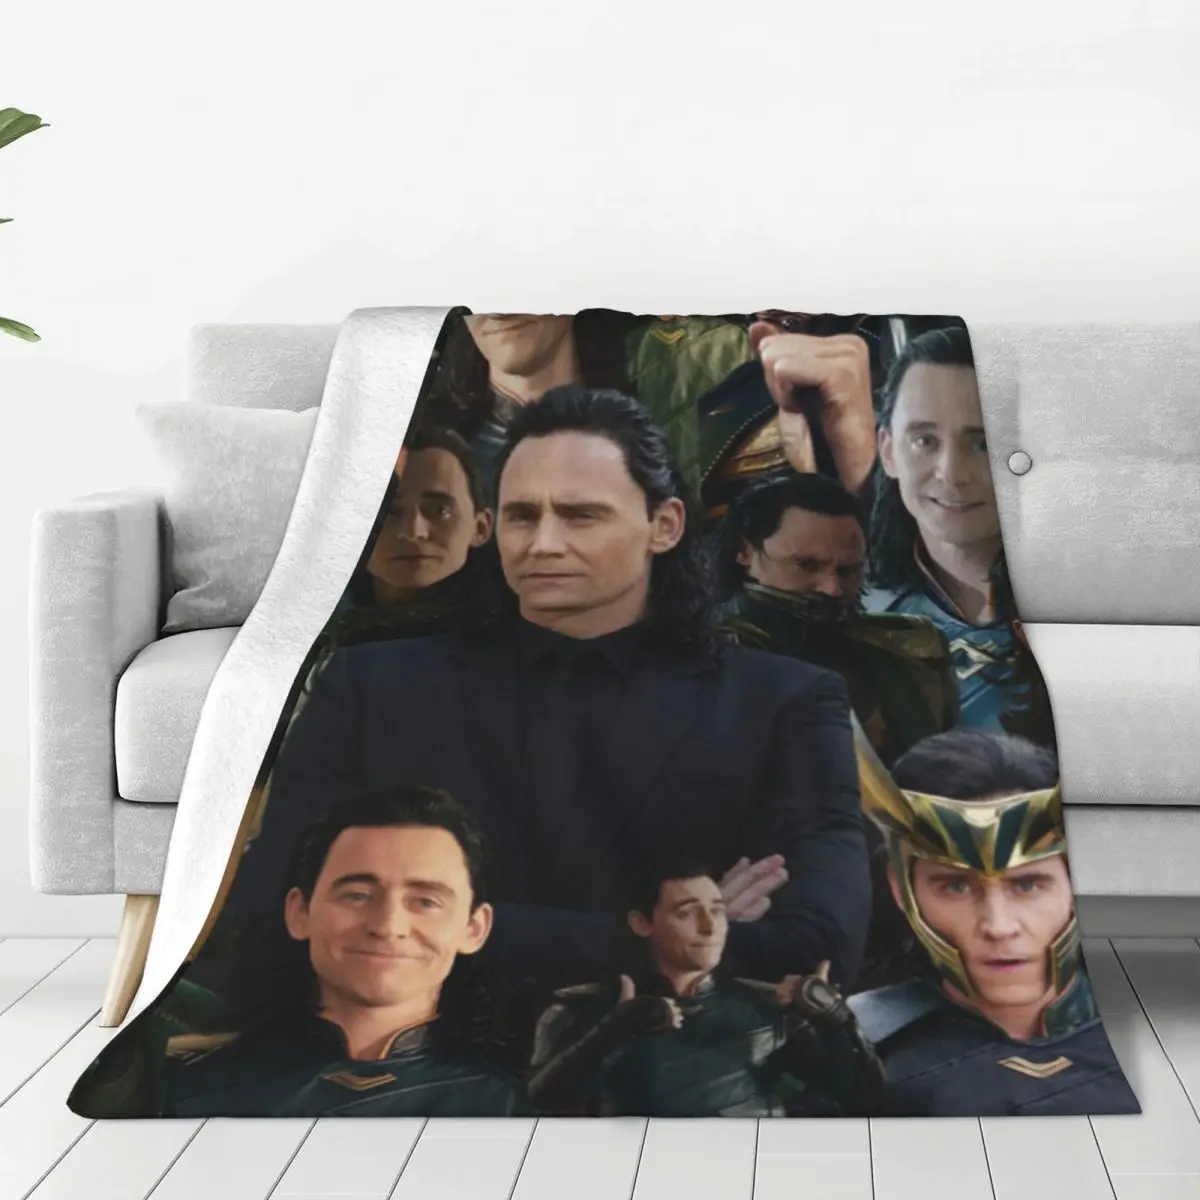 

Фланелевое Одеяло Tom Hiddlestons с фото, качественное супертеплое постельное белье с английским актером, зимнее дорожное покрывало для гостиной